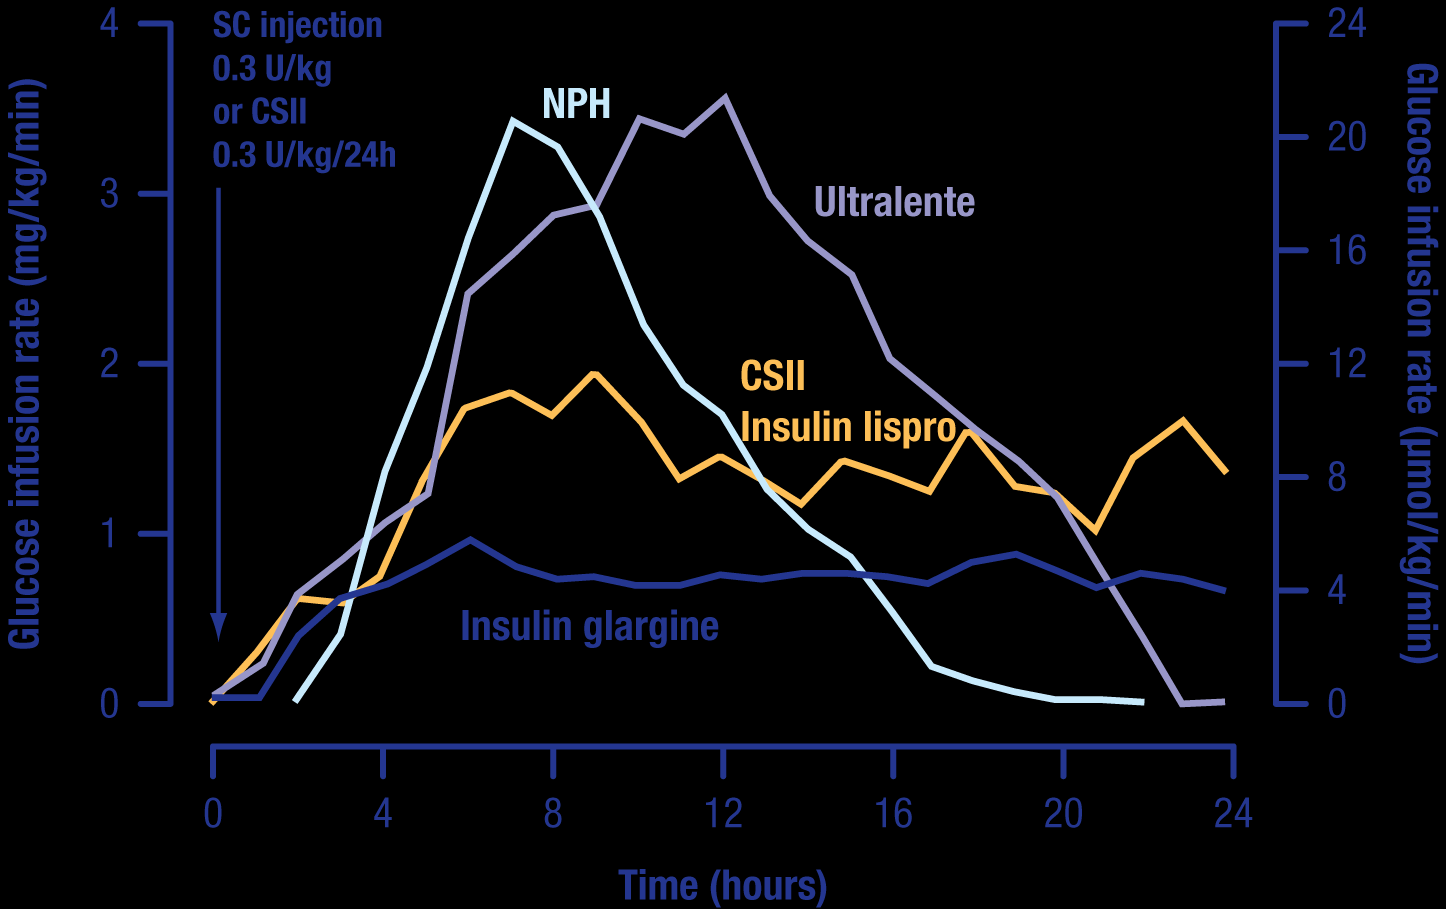 Taxa de infusão da glucose (mg/kg/min) Farmacocinética/Farmacodinamica: A Insulina Glargina tem um perfil de acção mais estável e uma duração de acção